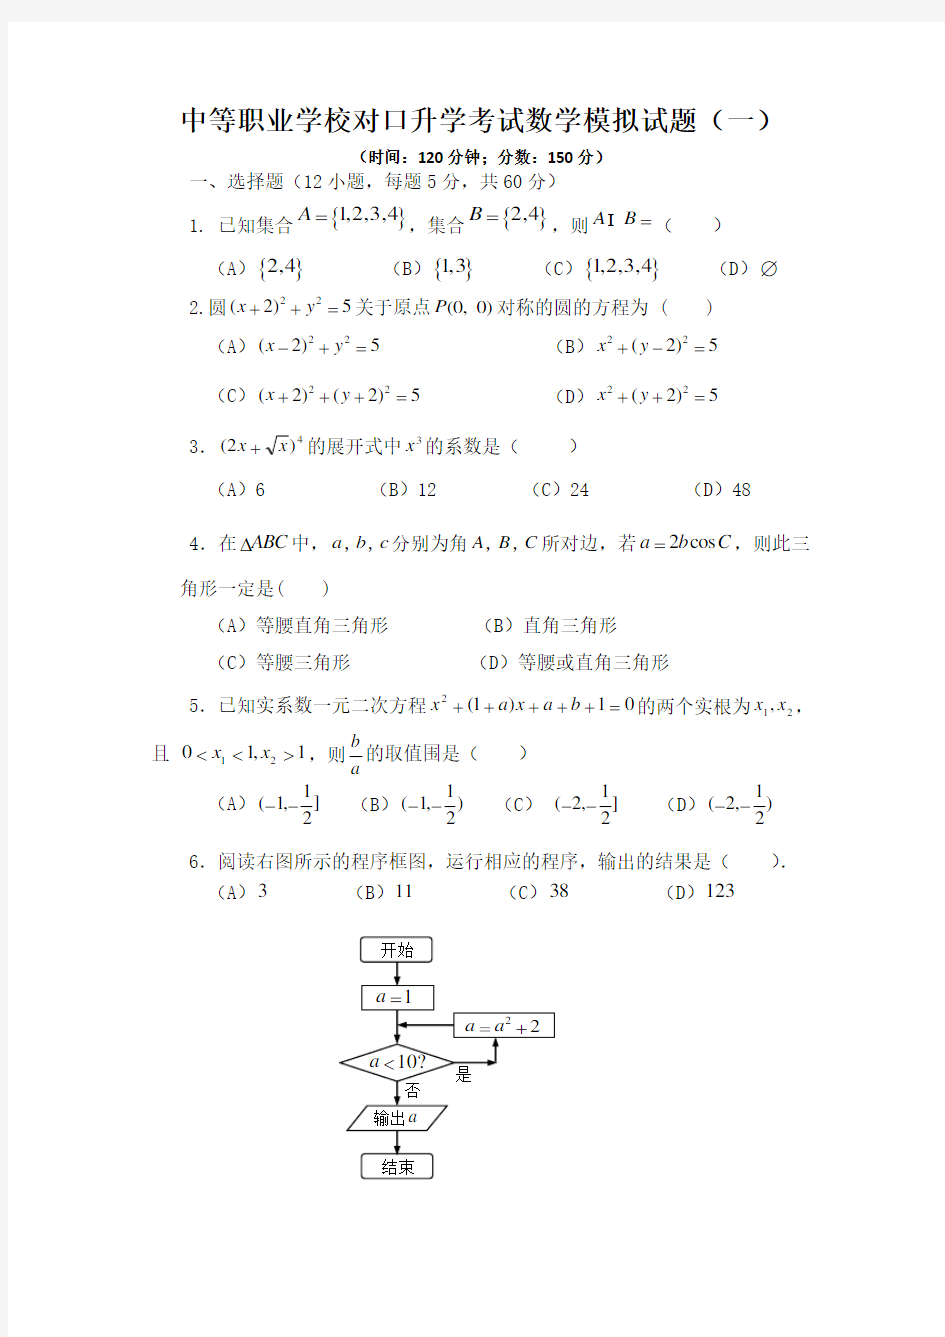 中等职业学校对口升学考试数学模拟试题(卷)(一)